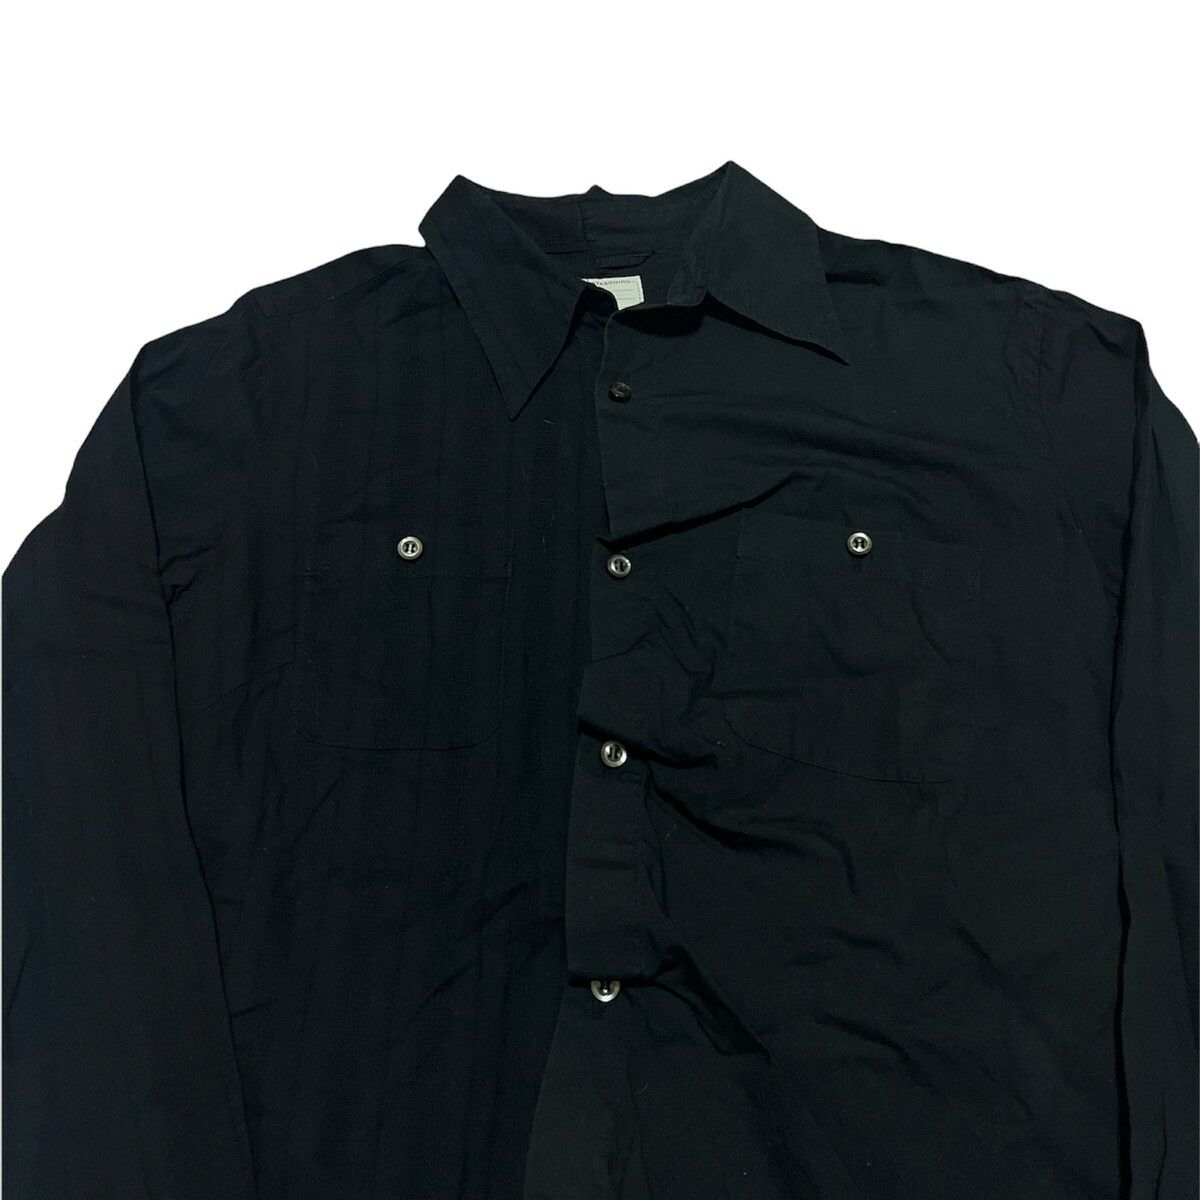 Miharayasuhiro Reconstructed Button up shirt - 3